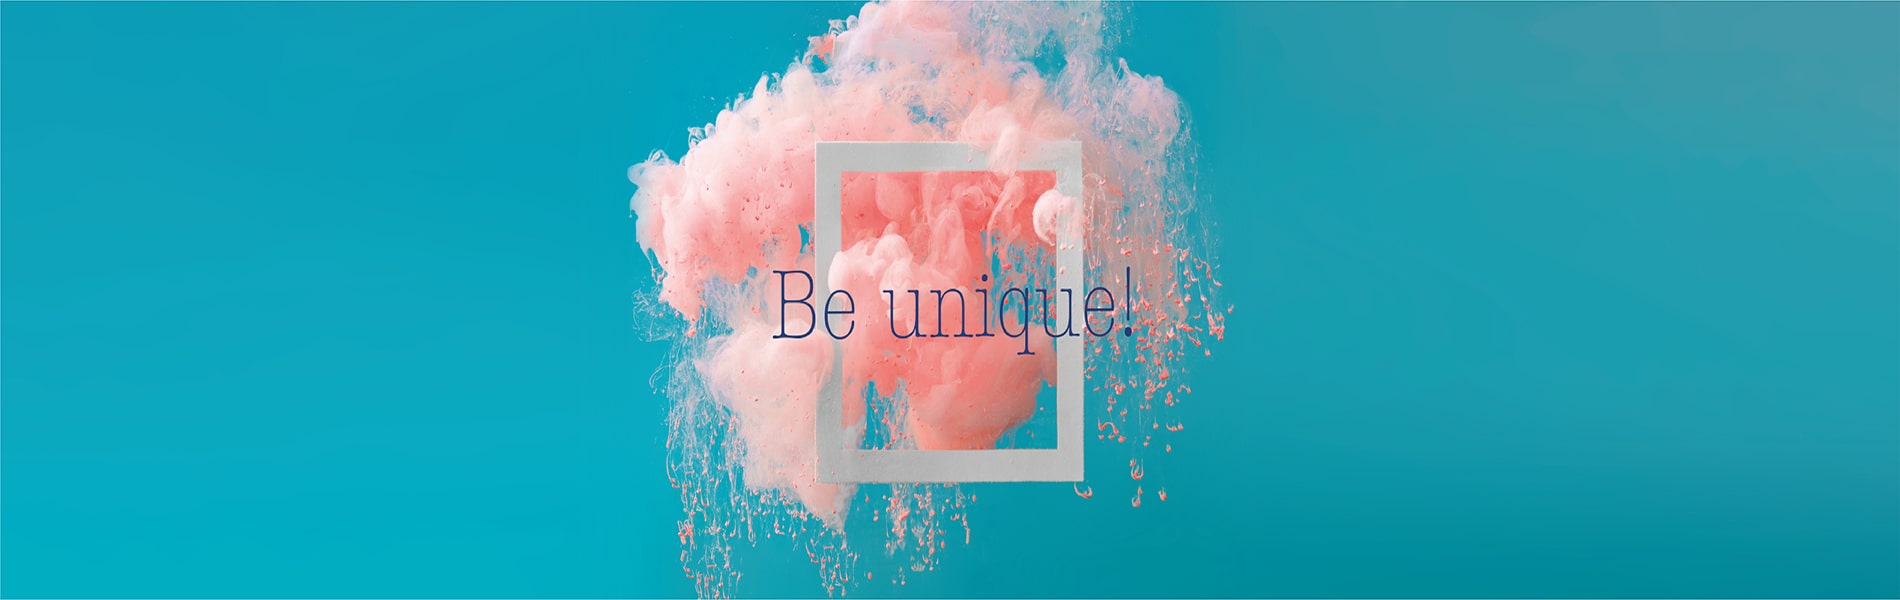 Be unique!